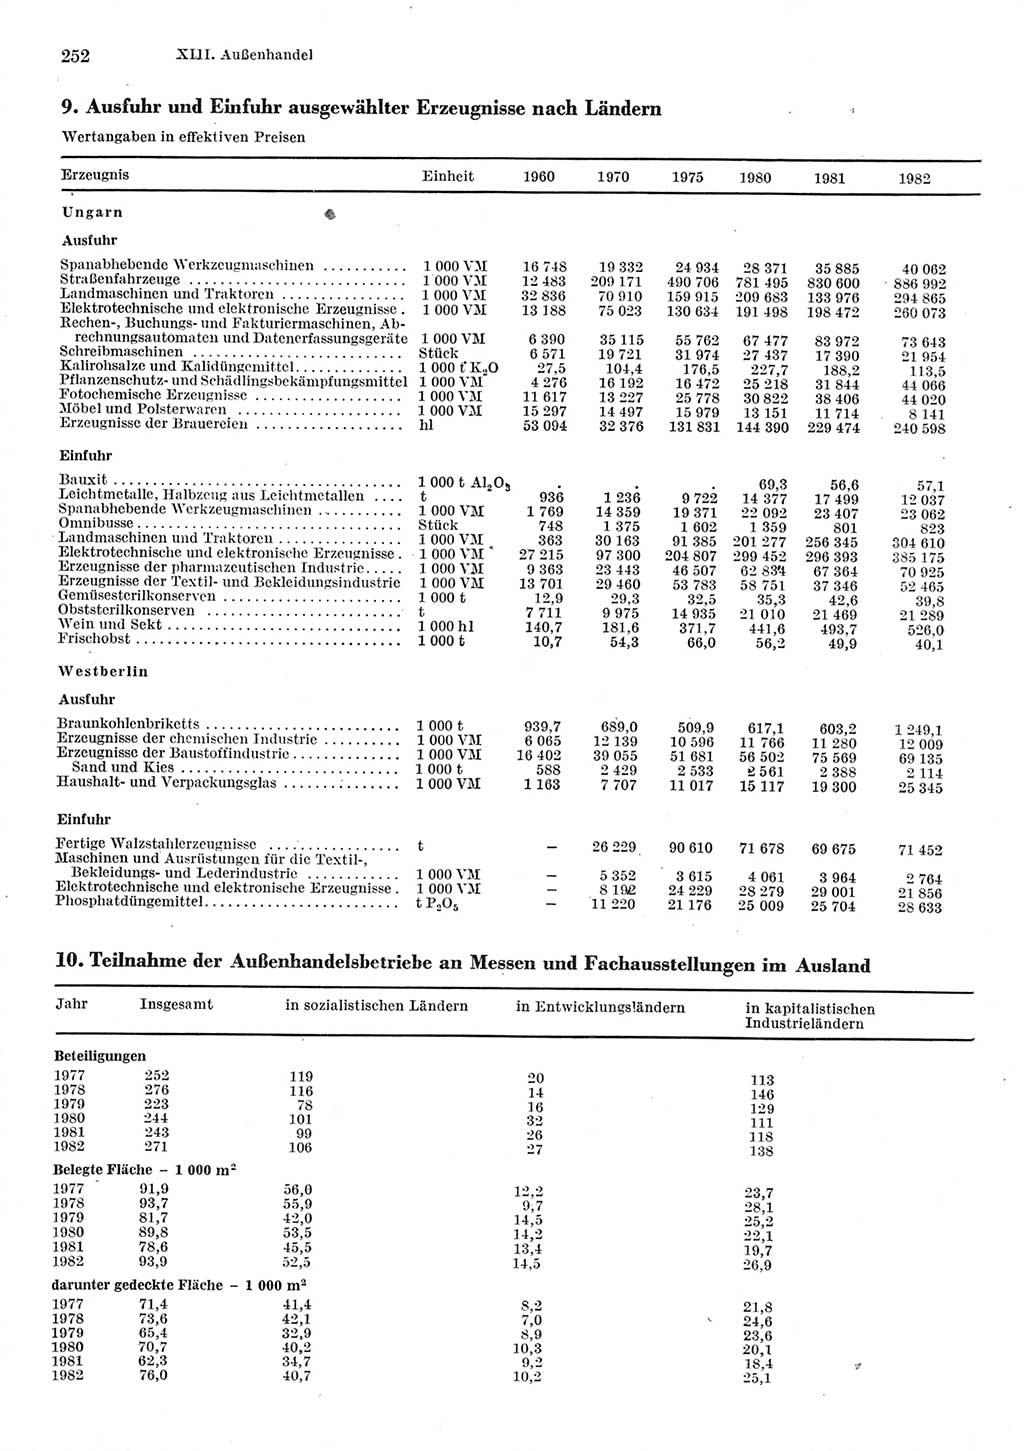 Statistisches Jahrbuch der Deutschen Demokratischen Republik (DDR) 1983, Seite 252 (Stat. Jb. DDR 1983, S. 252)